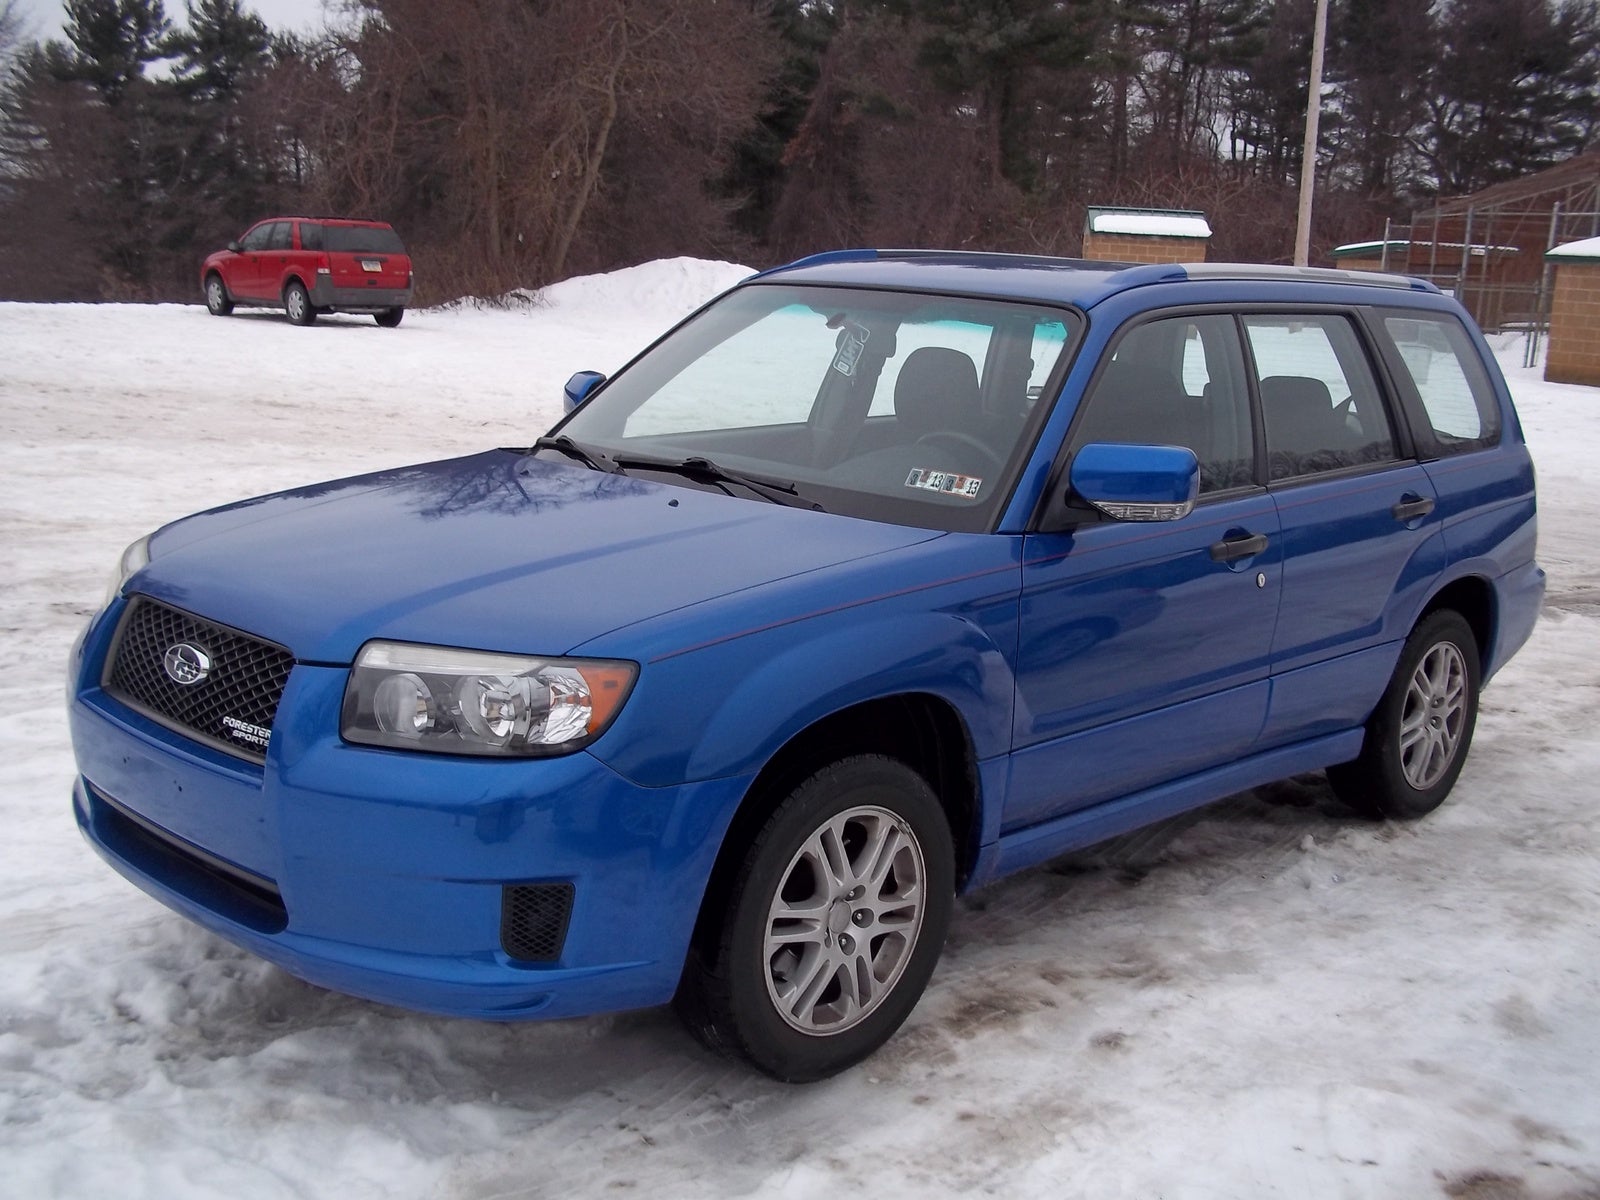 2008 Subaru Forester Pictures CarGurus